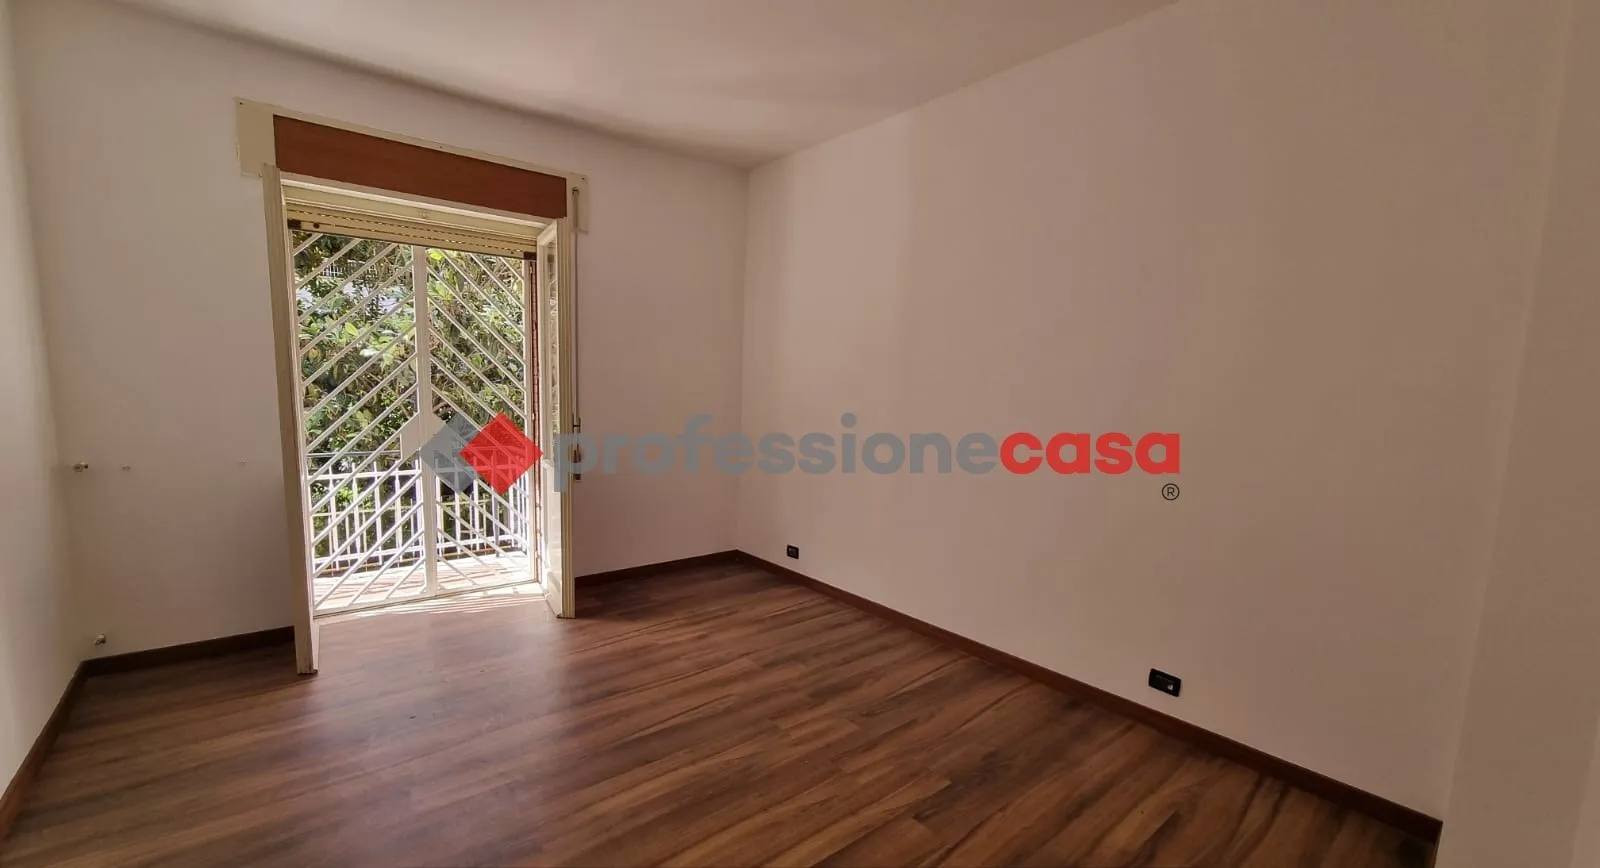 Immagine per Appartamento in vendita a Pomezia via Aurelio Saffi 8